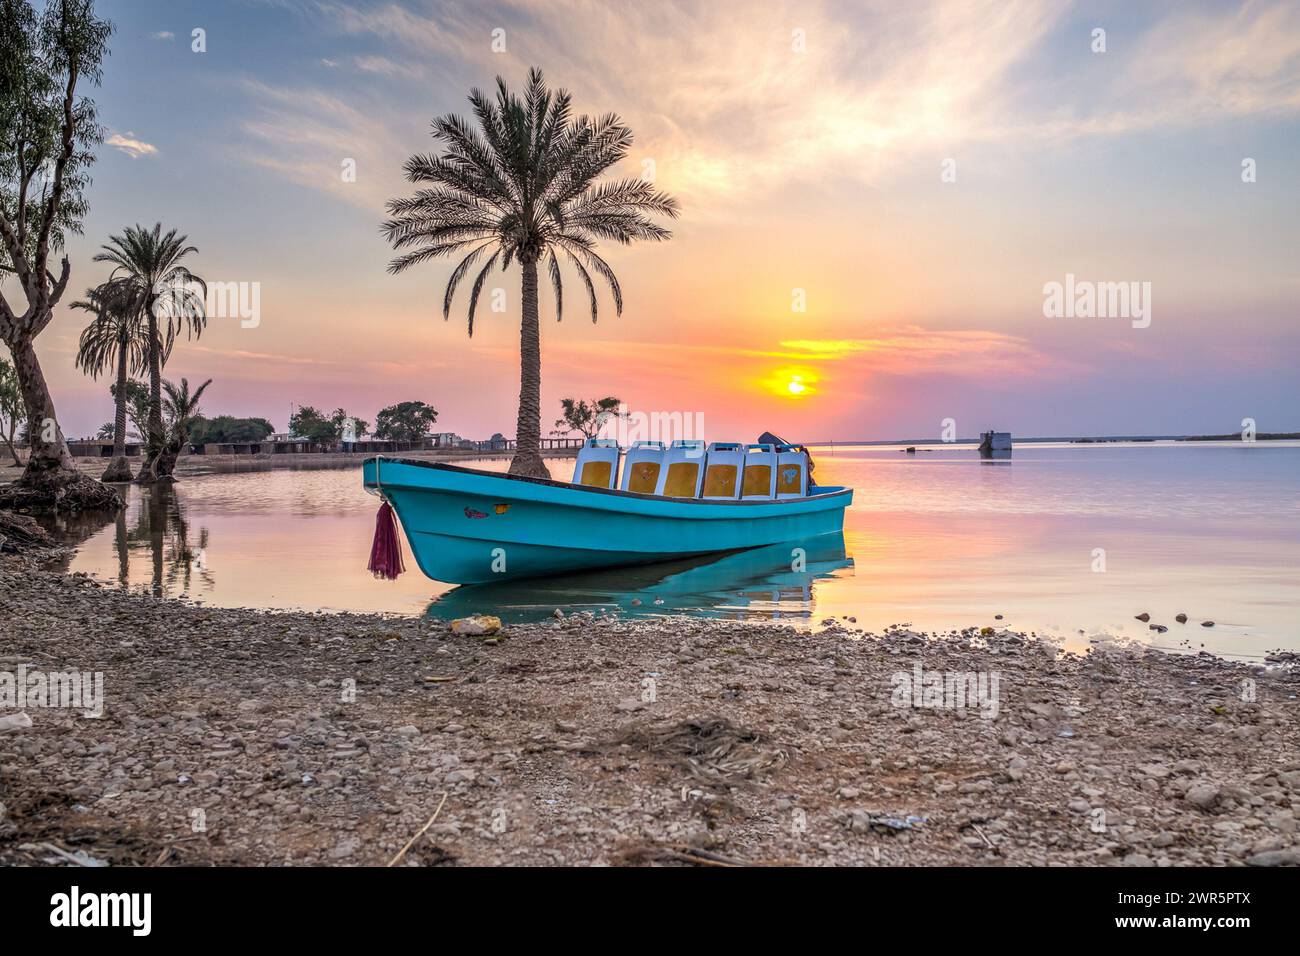 Una barca blu solitaria galleggia vicino al riflesso della palma mentre il sole tramonta, gettando calde sfumature sulle acque calme. Foto Stock